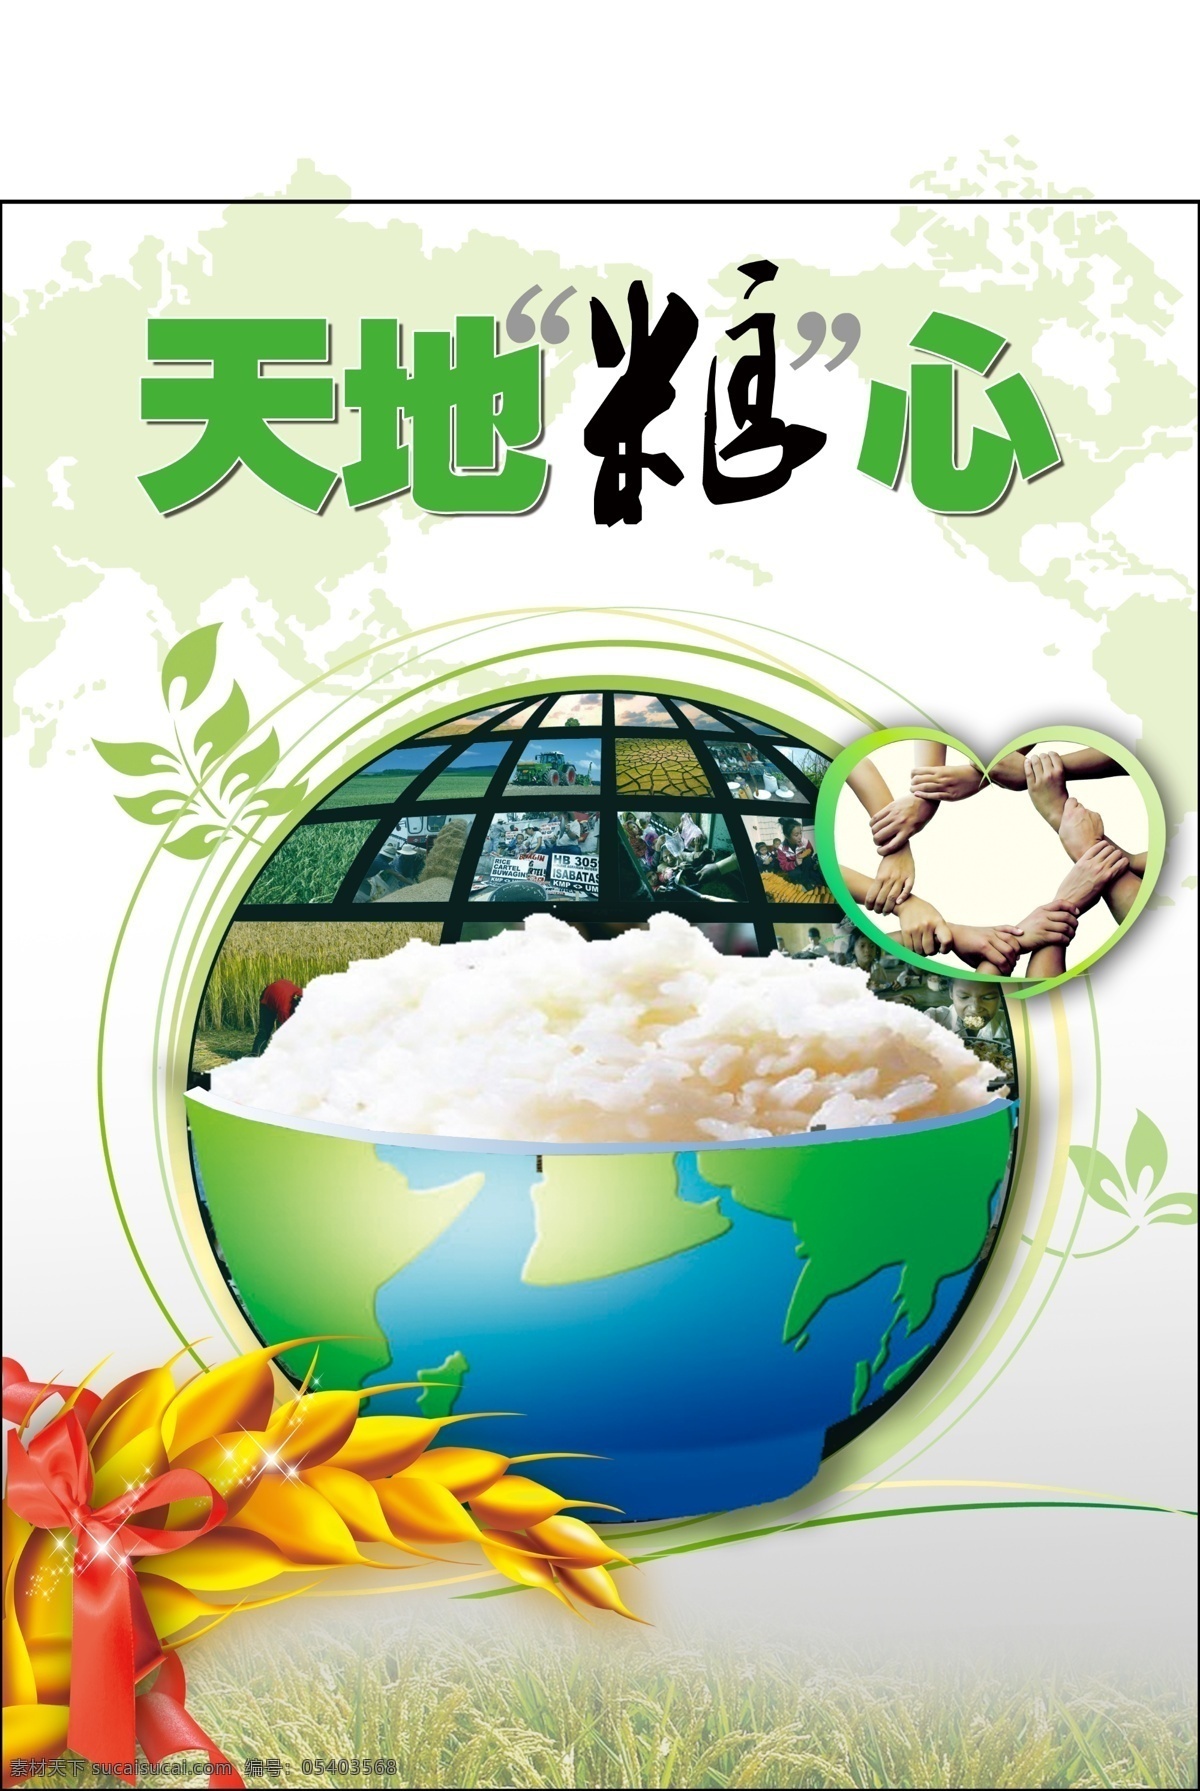 天地粮心 世界粮食日 粮食 米饭 地球 共同 麦穗 广告设计模板 源文件